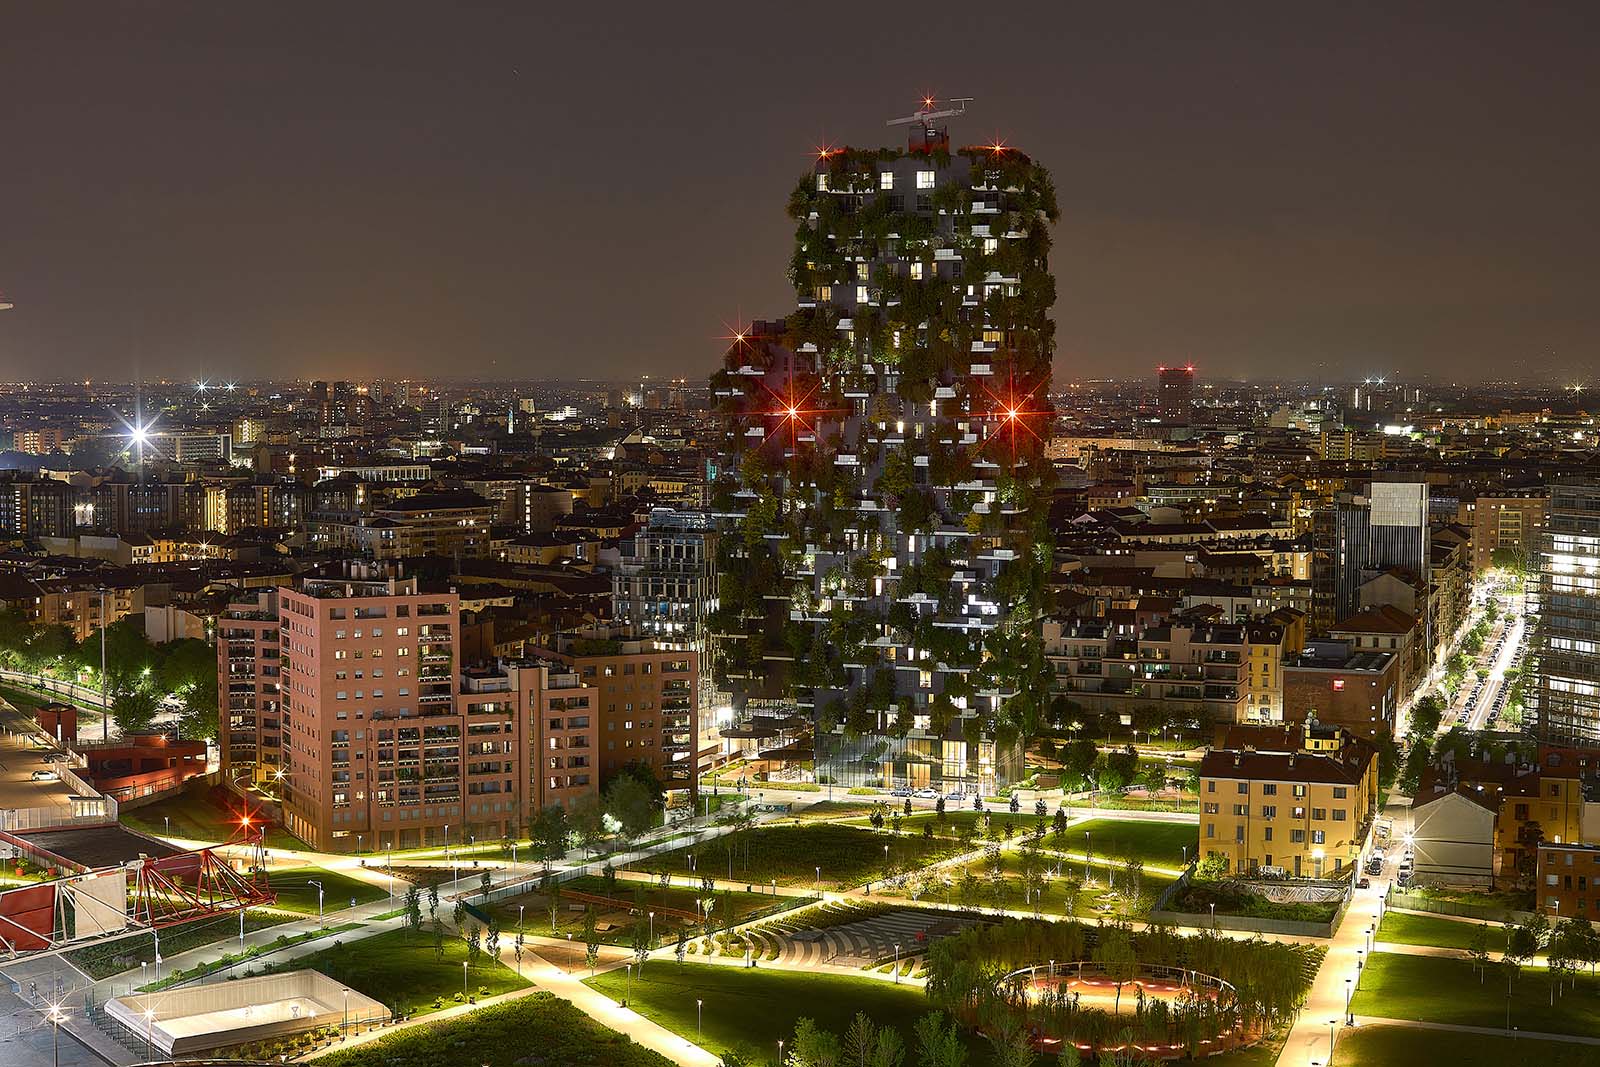 Fotografo di architettura a Milano Bosco Verticale Torri Aria, Solaria, Solea